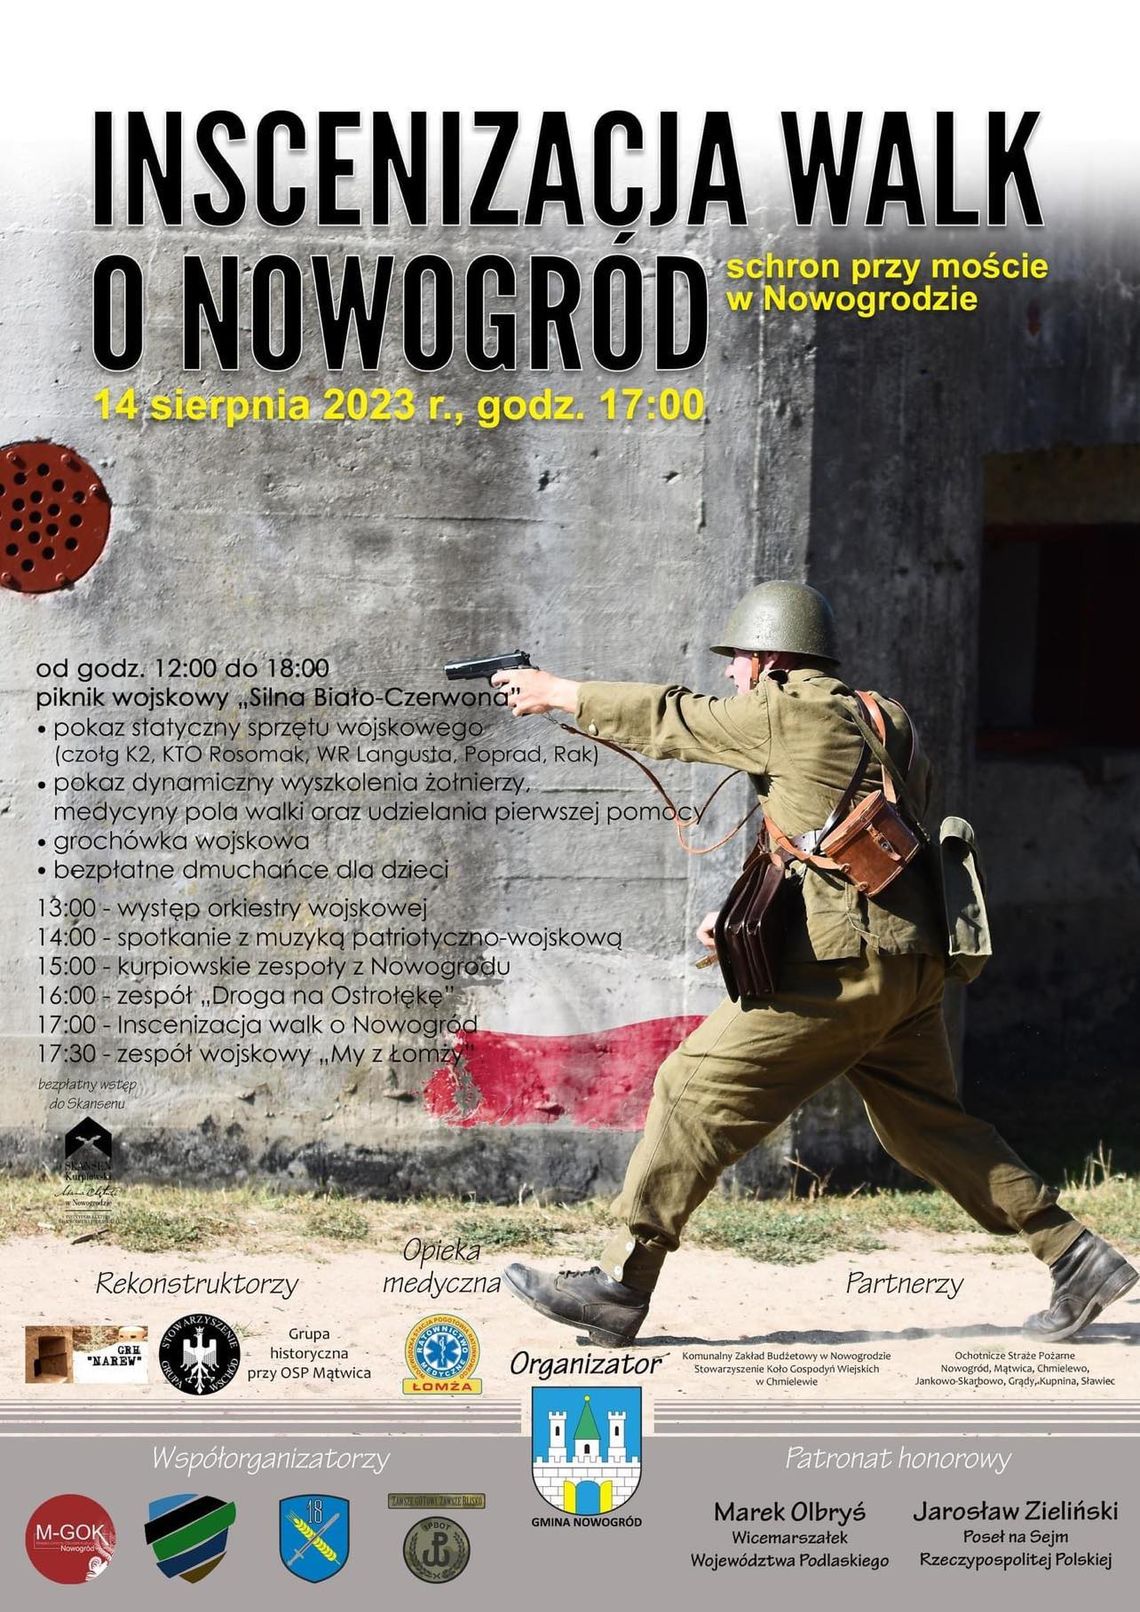 Inscenizacja walk o Nowogród i piknik wojskowy "Silna Biało-Czerwona" w Nowogrodzie